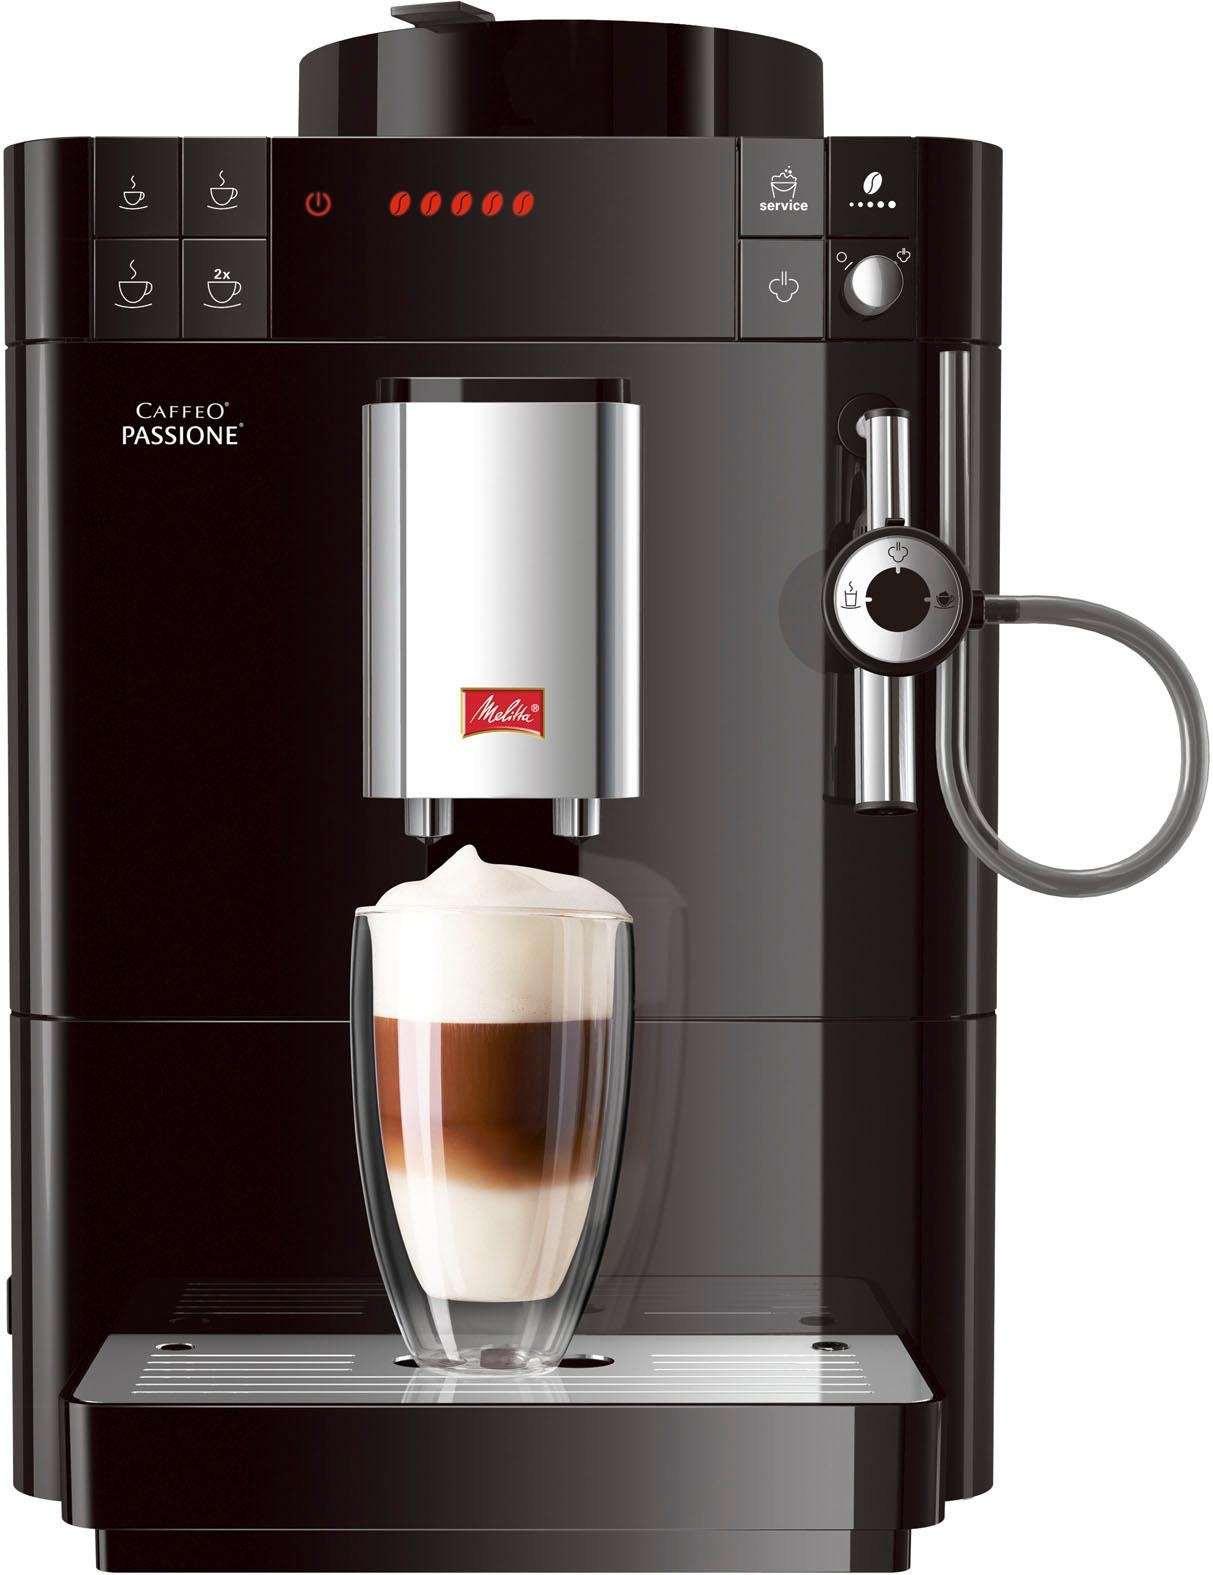 & Service-Taste OTTO bestellen Melitta jetzt gemahlen, bei F53/0-102 frisch für Entkalkung Tassengenau schwarz«, »Passione® Kaffeevollautomat Reinigung